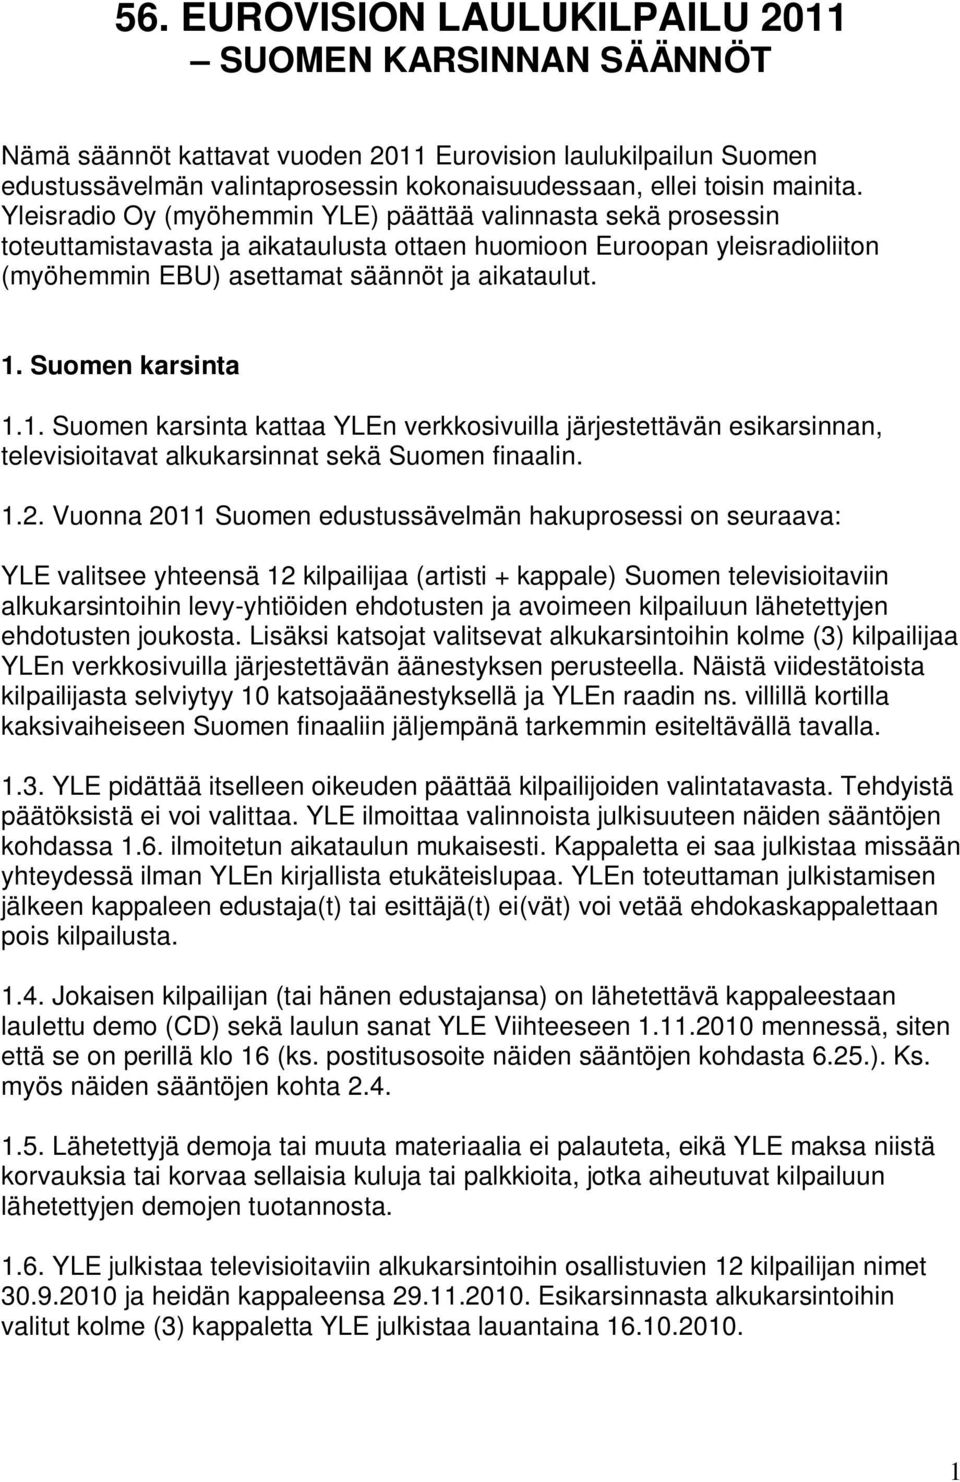 Suomen karsinta 1.1. Suomen karsinta kattaa YLEn verkkosivuilla järjestettävän esikarsinnan, televisioitavat alkukarsinnat sekä Suomen finaalin. 1.2.